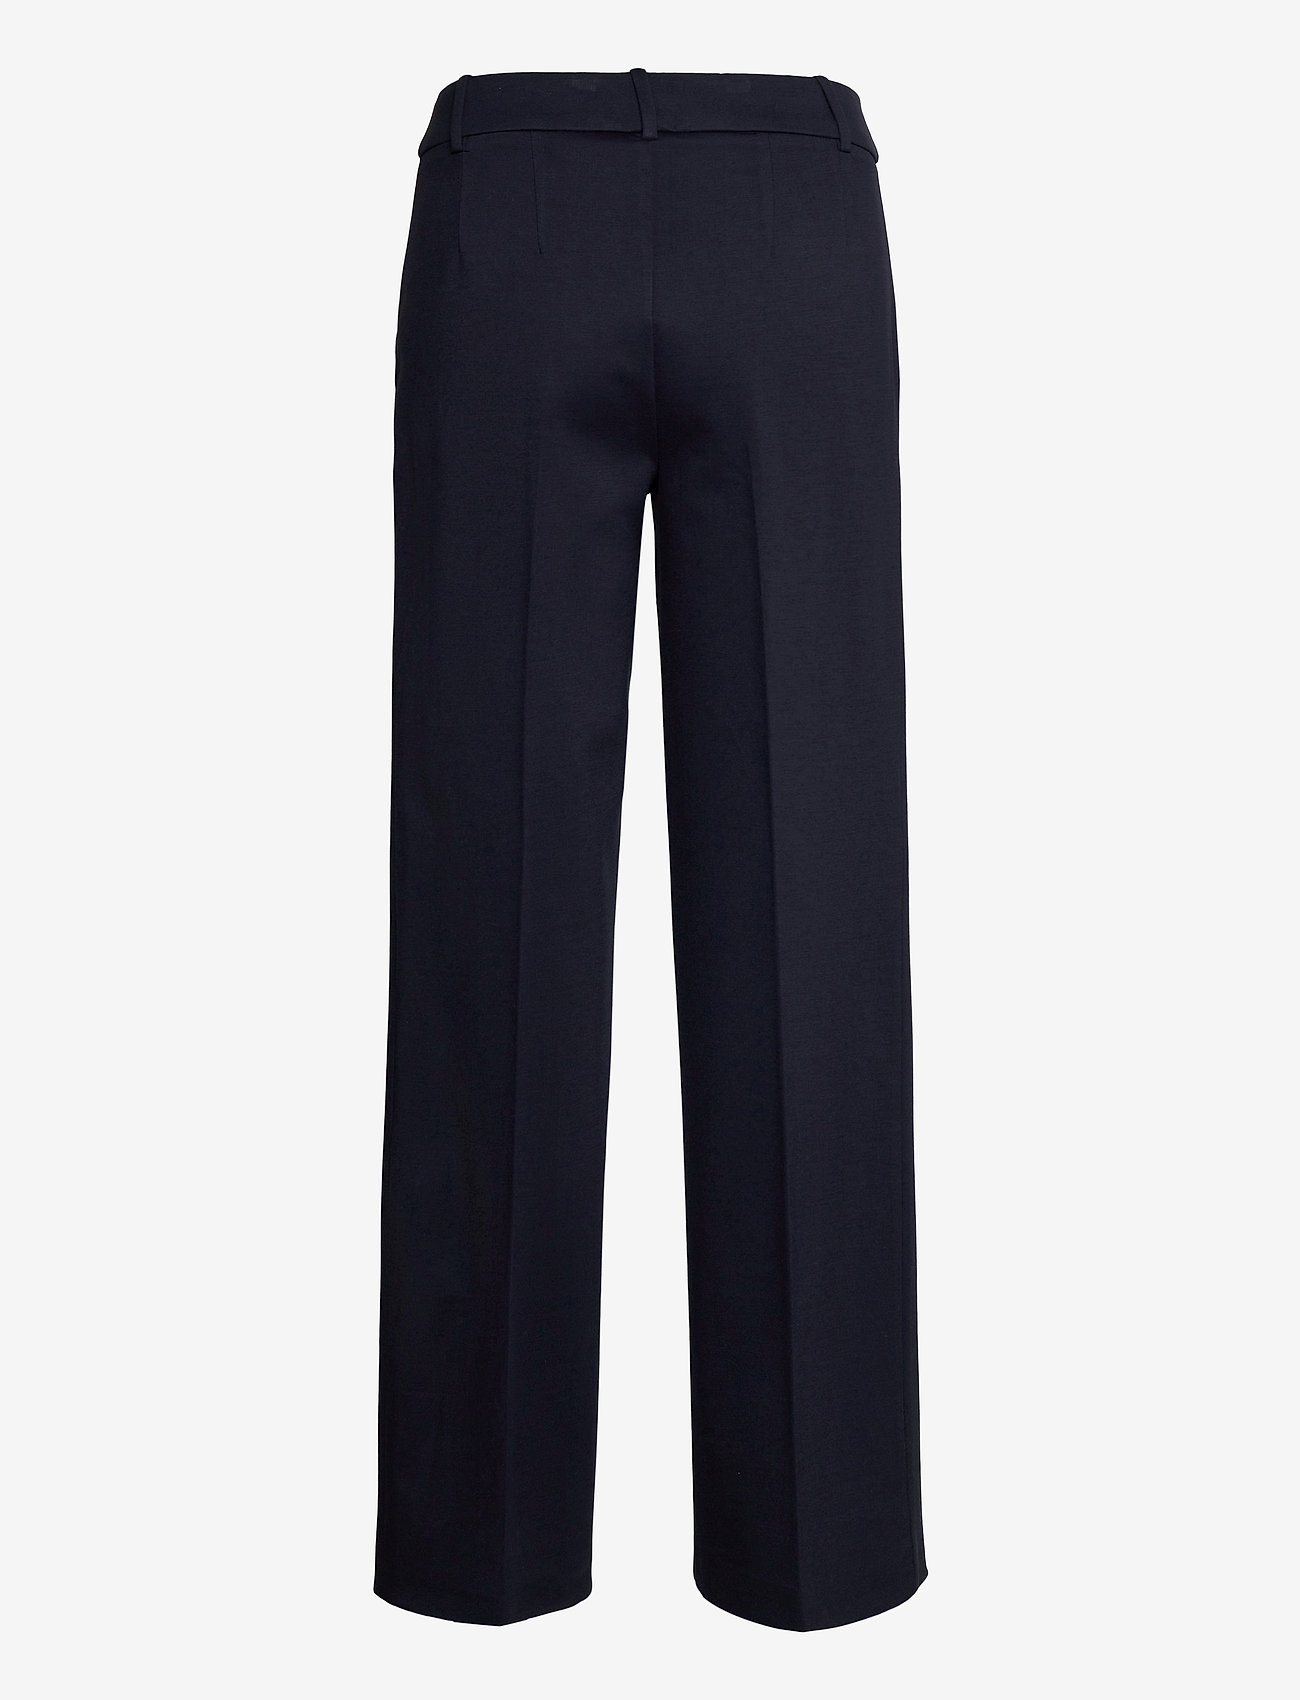 Esprit Collection - Pants woven - puvunhousut - navy - 1